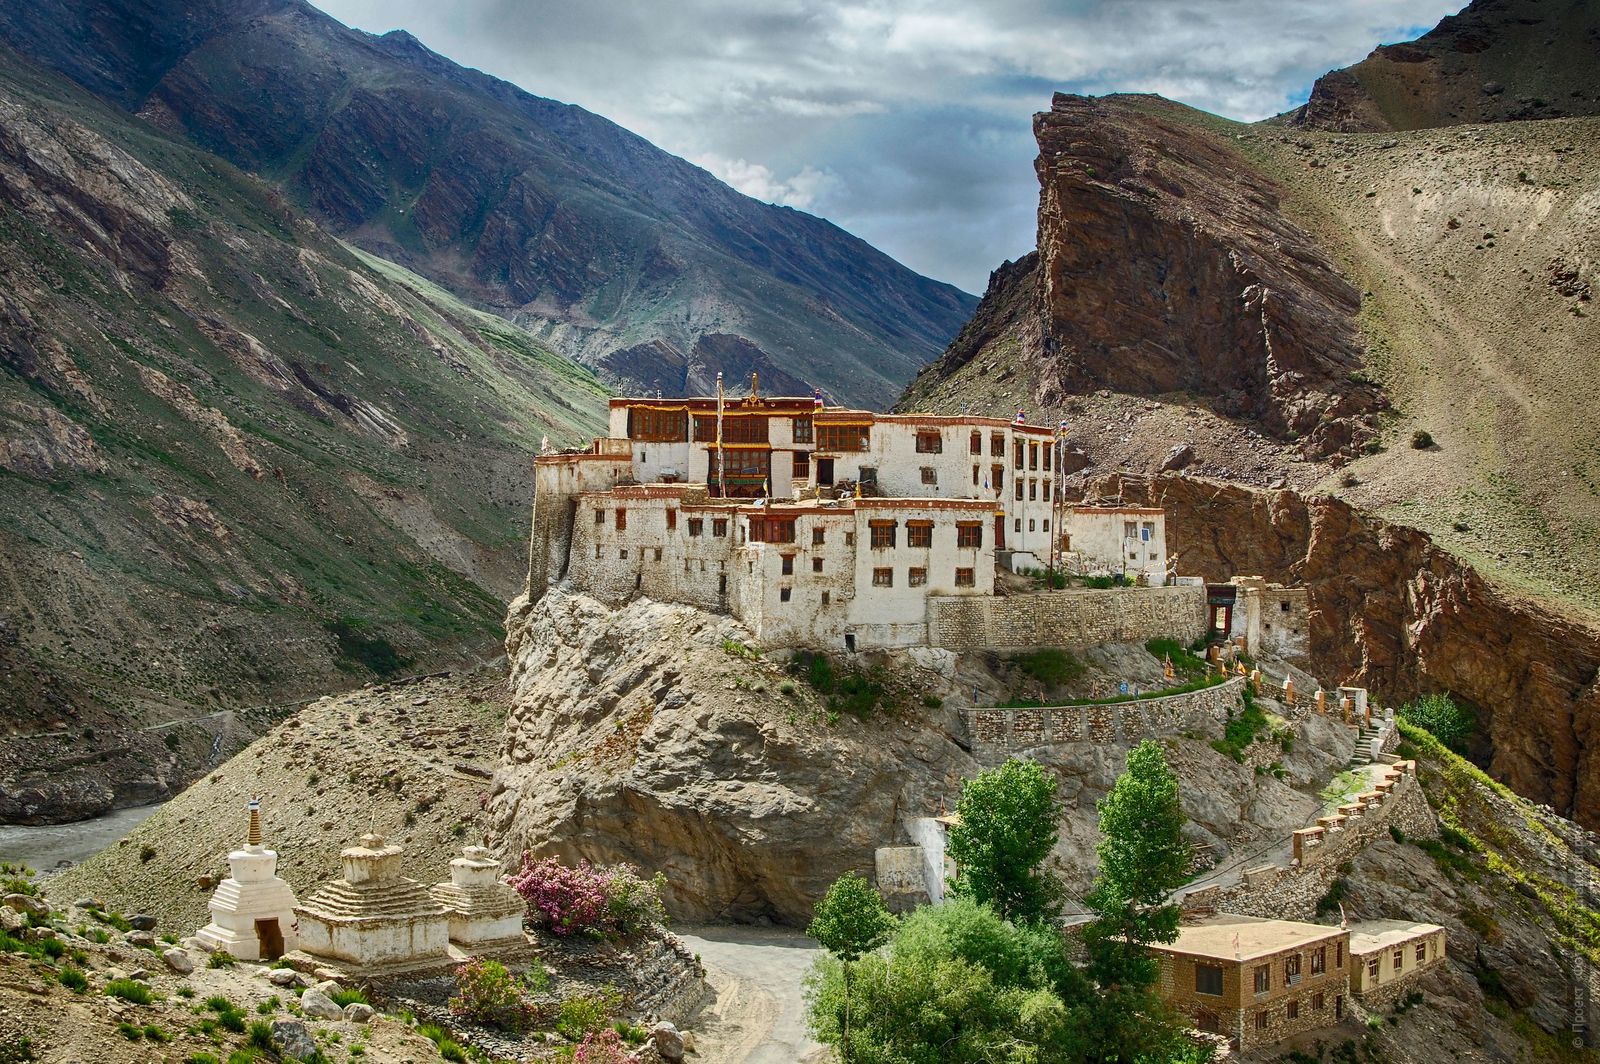 Buddhist monastery Bardan Gonpa. Budget photo tour Legends of Tibet: Zanskar, September 15 - September 26, 2021.